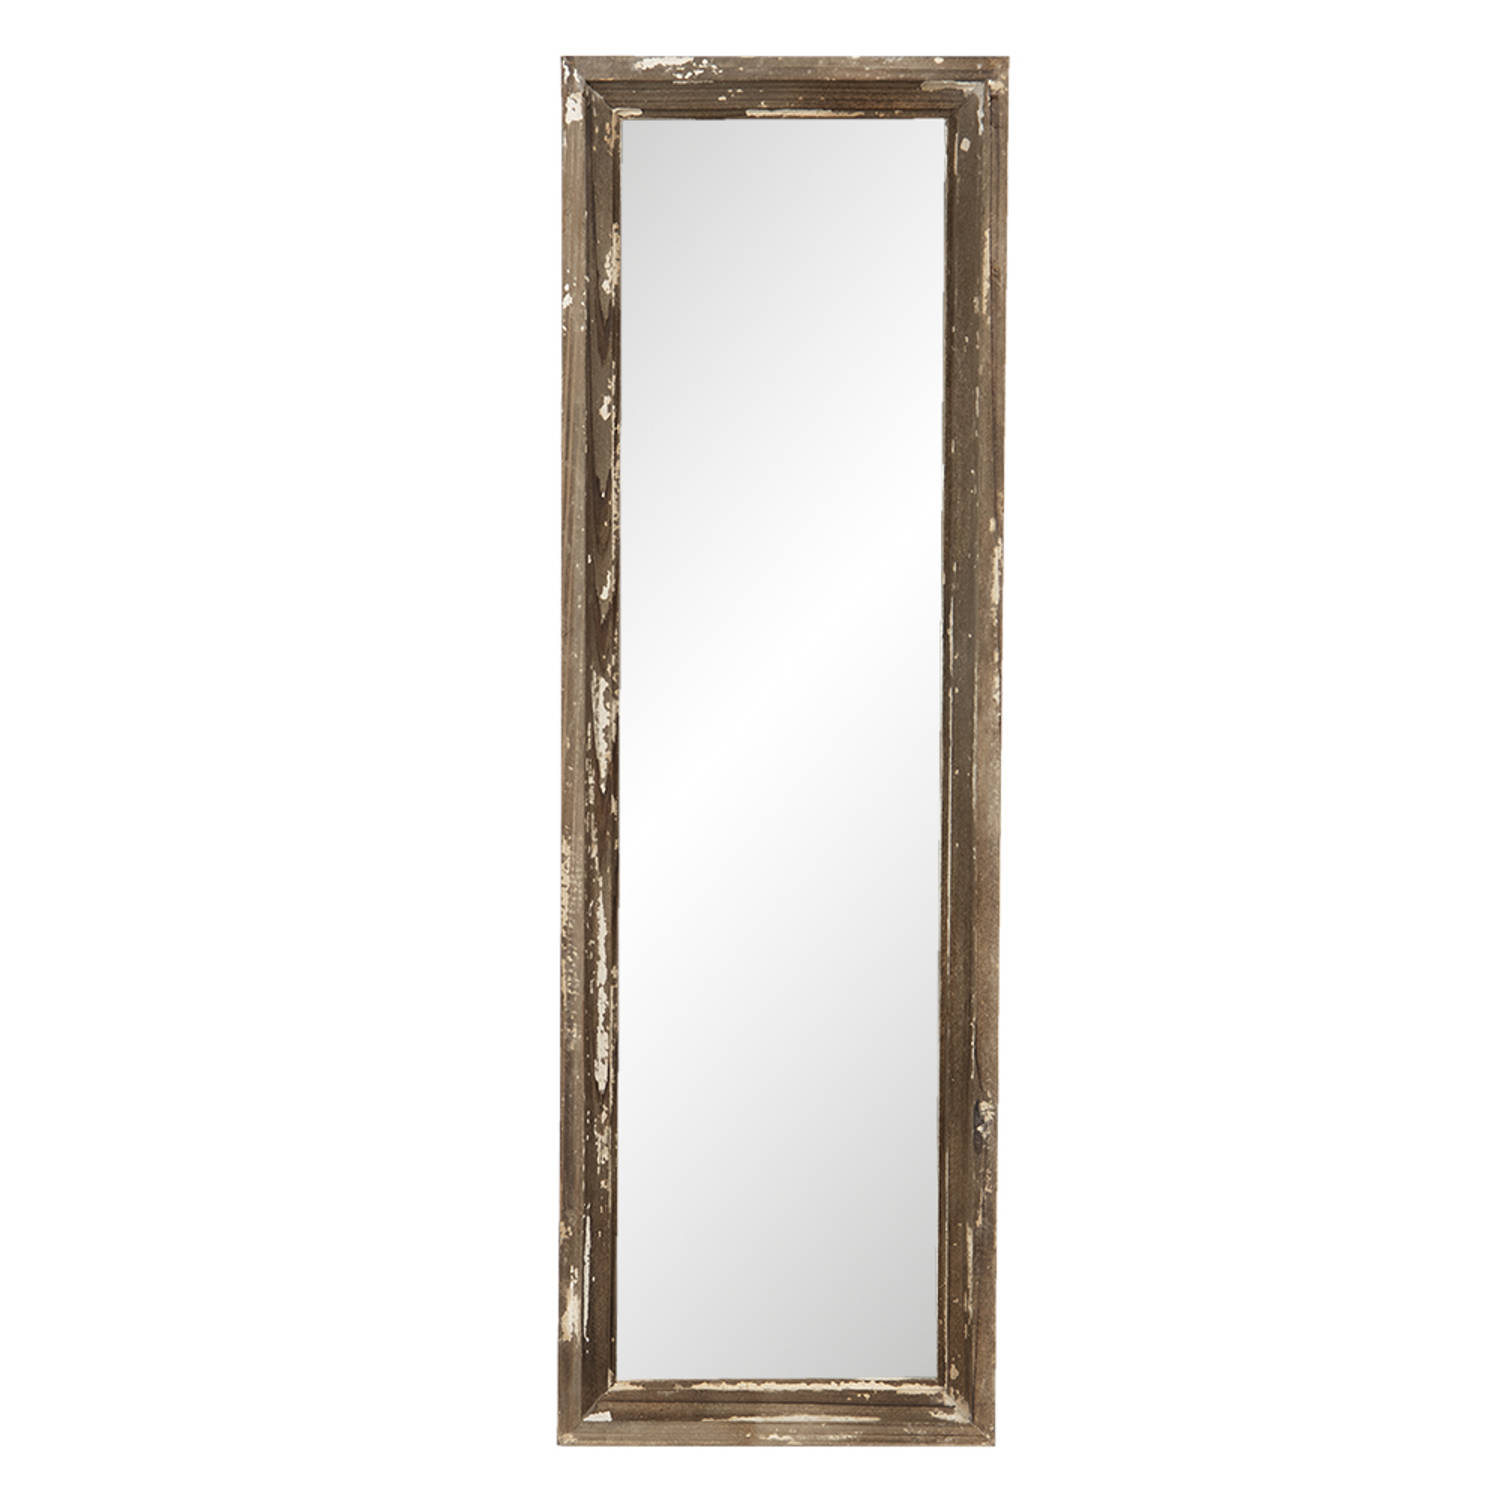 HAES DECO - Rechthoekige Spiegel - Kleur Bruin - Formaat 22x3x70 cm - Materiaal Hout / Glas - Wandspiegel, Spiegel Rechthoek